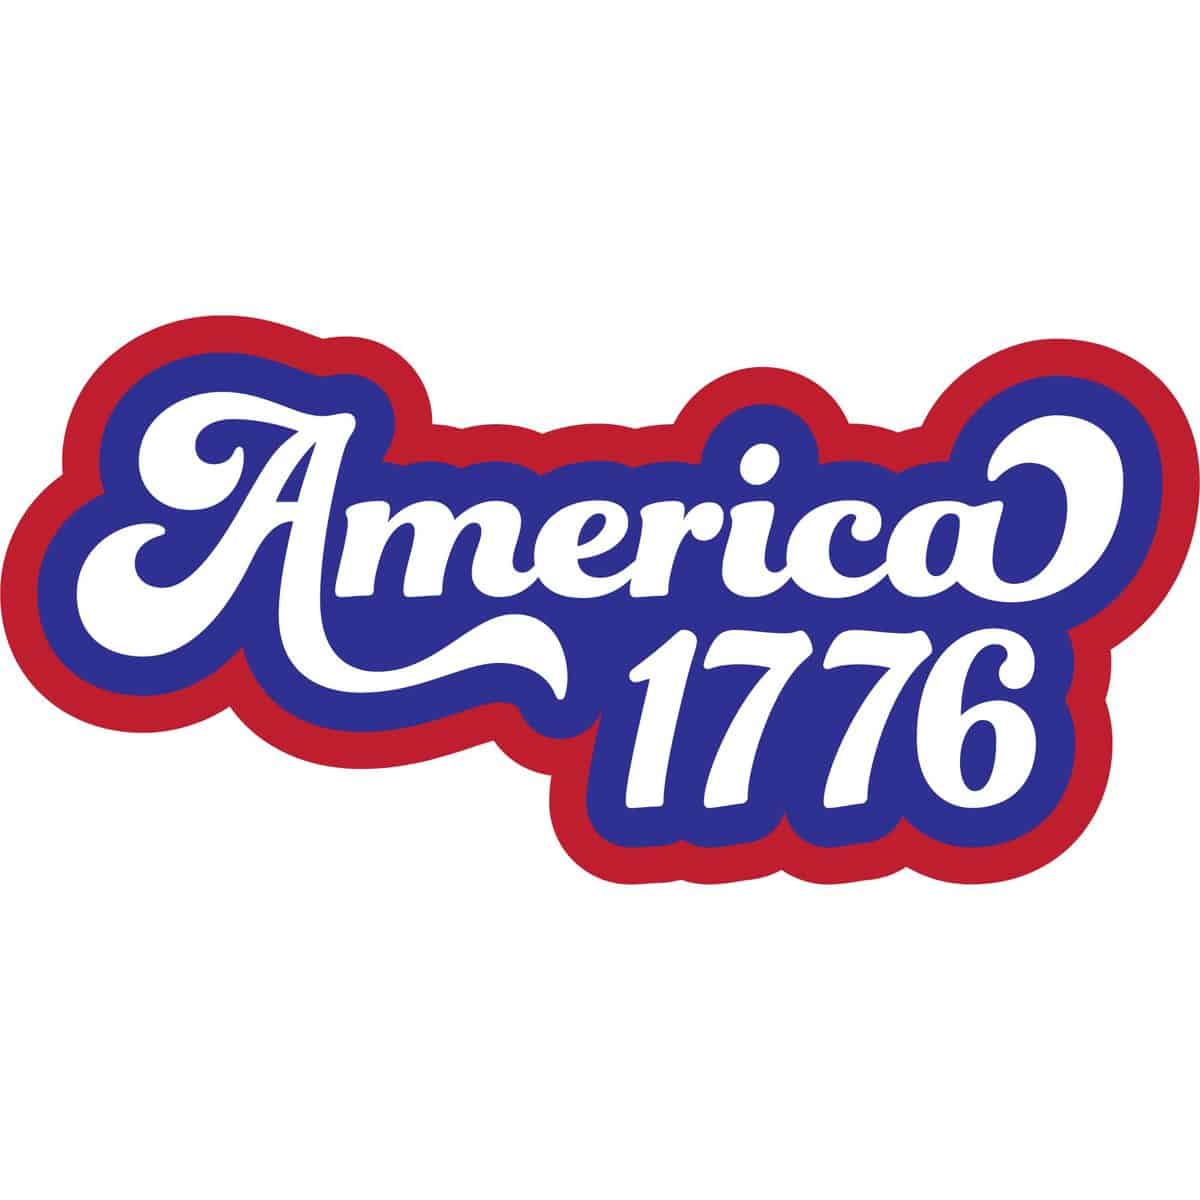 Layered SVG Cut File: Retro American 1776.